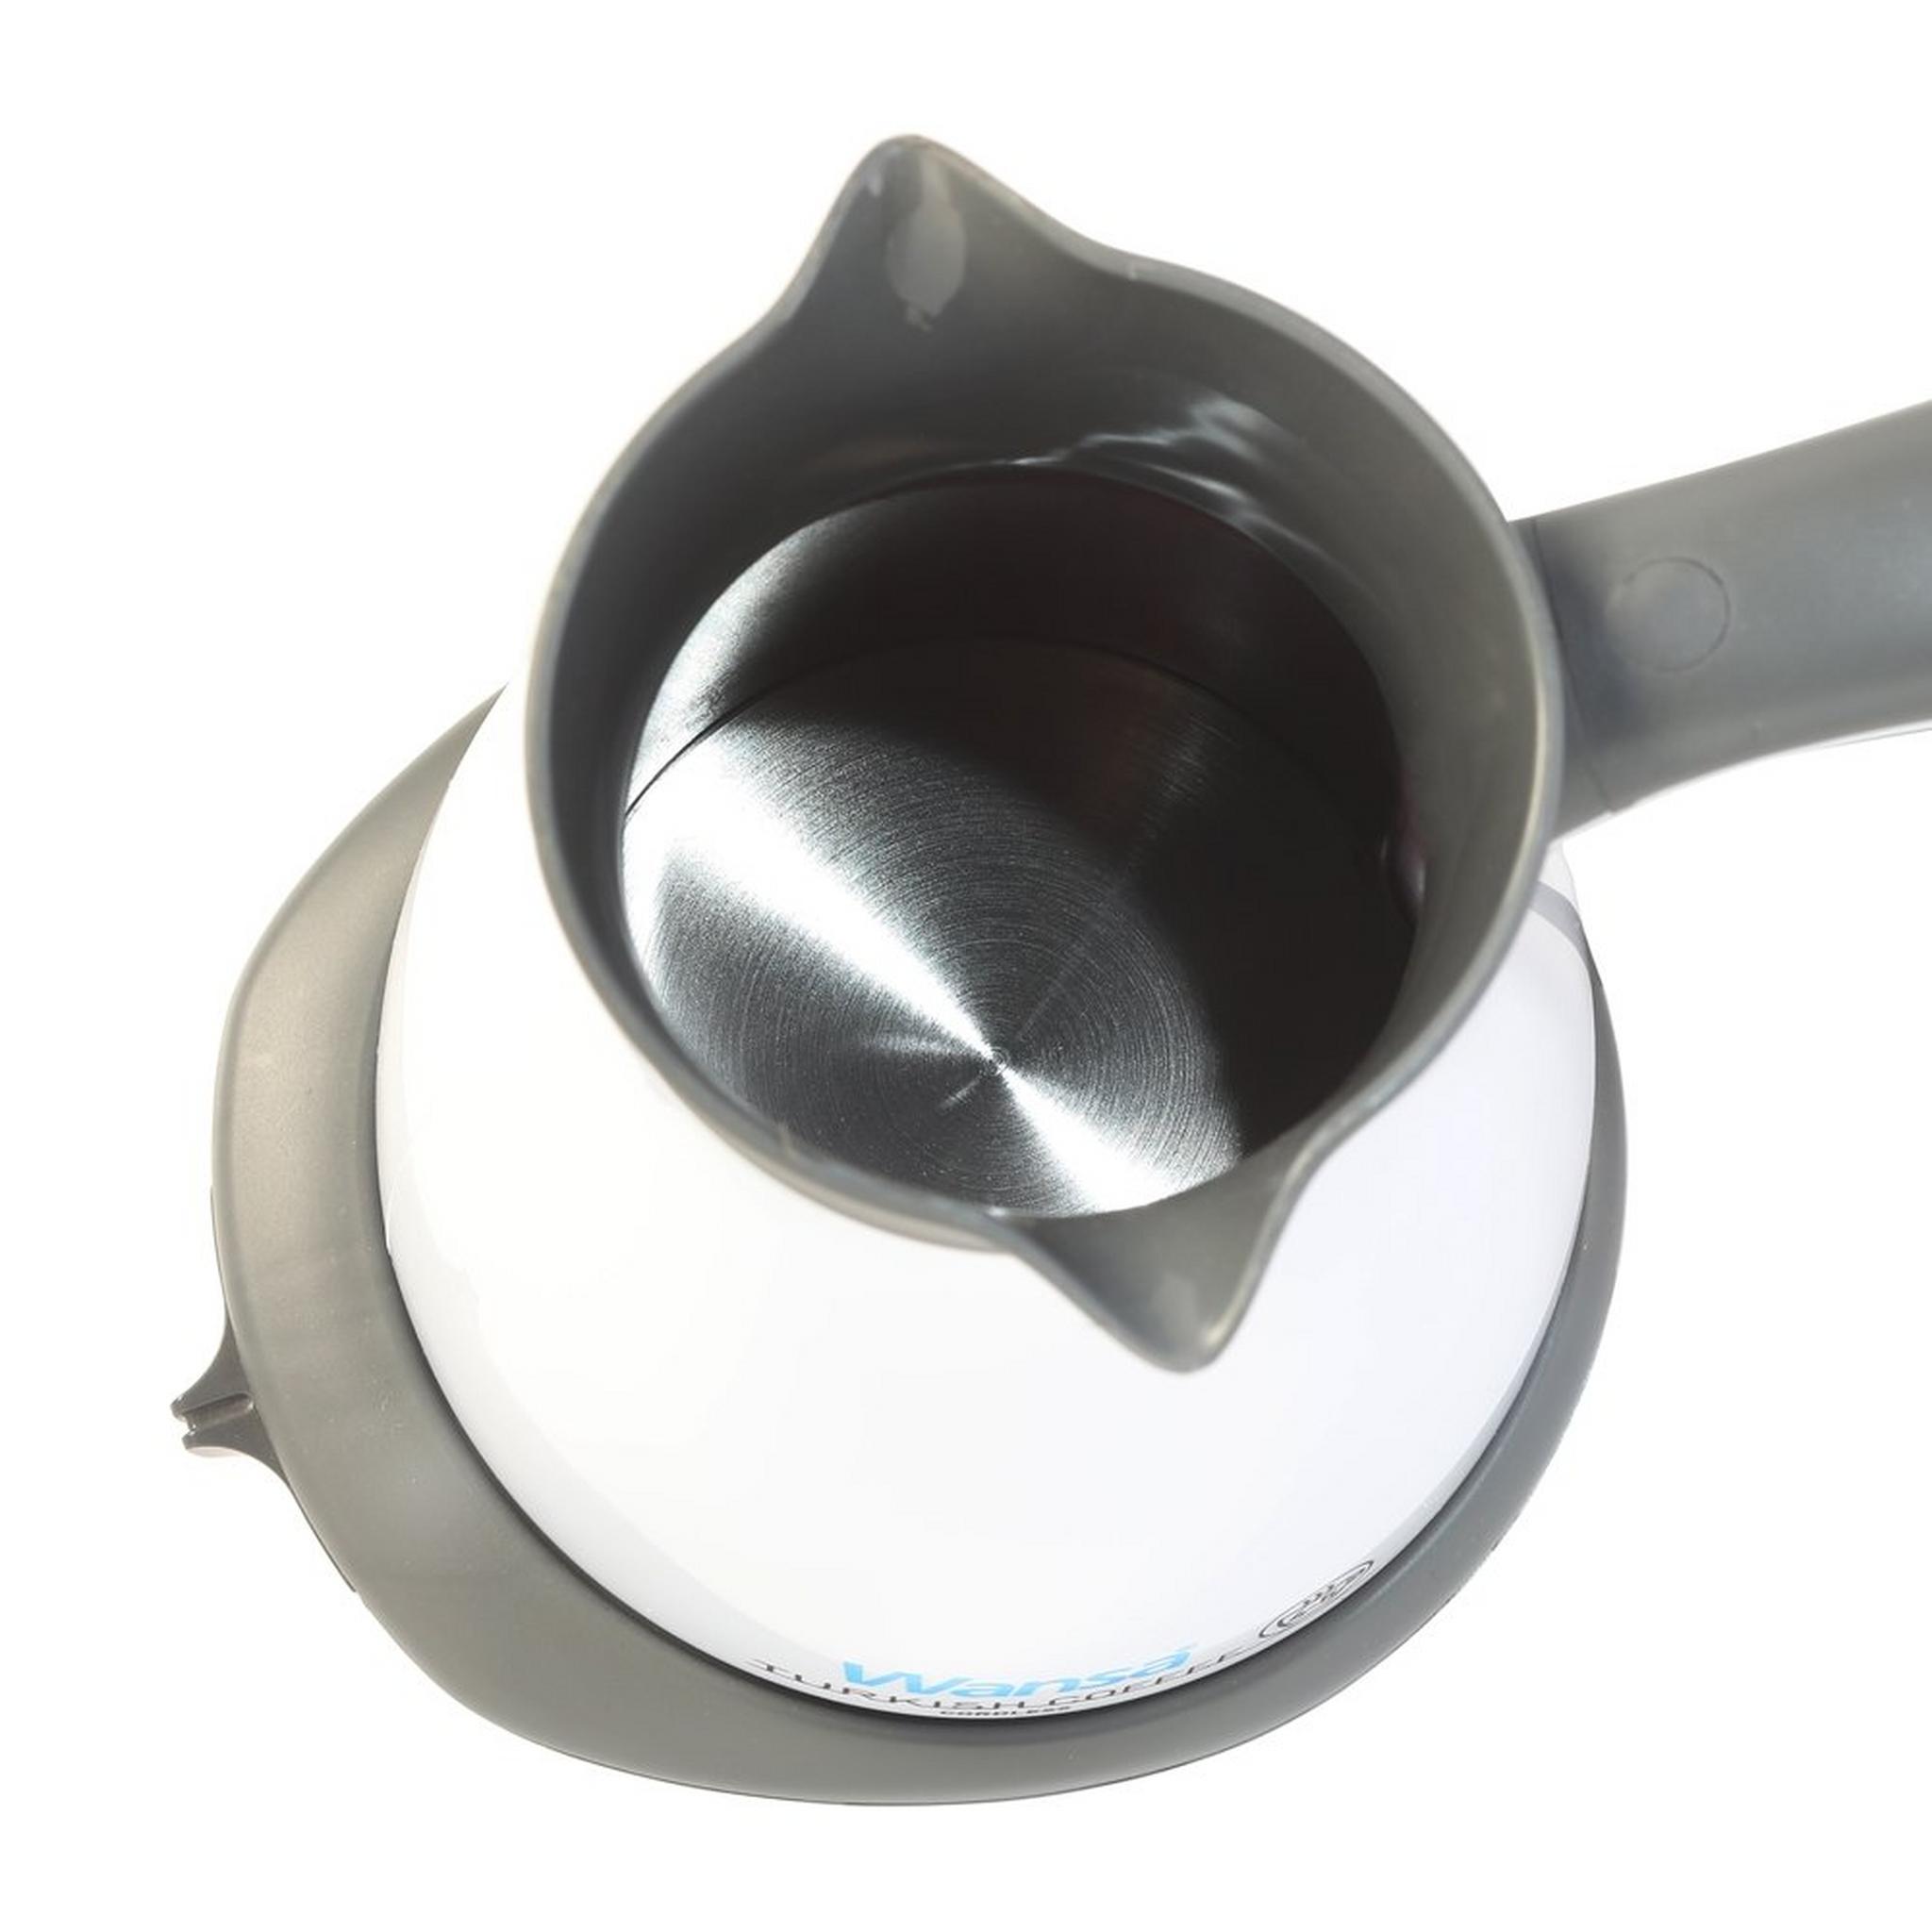 ماكينة تحضير القهوة التركية من ونسا، 550 واط، 0.33 لتر، TCM-2020 - أبيض